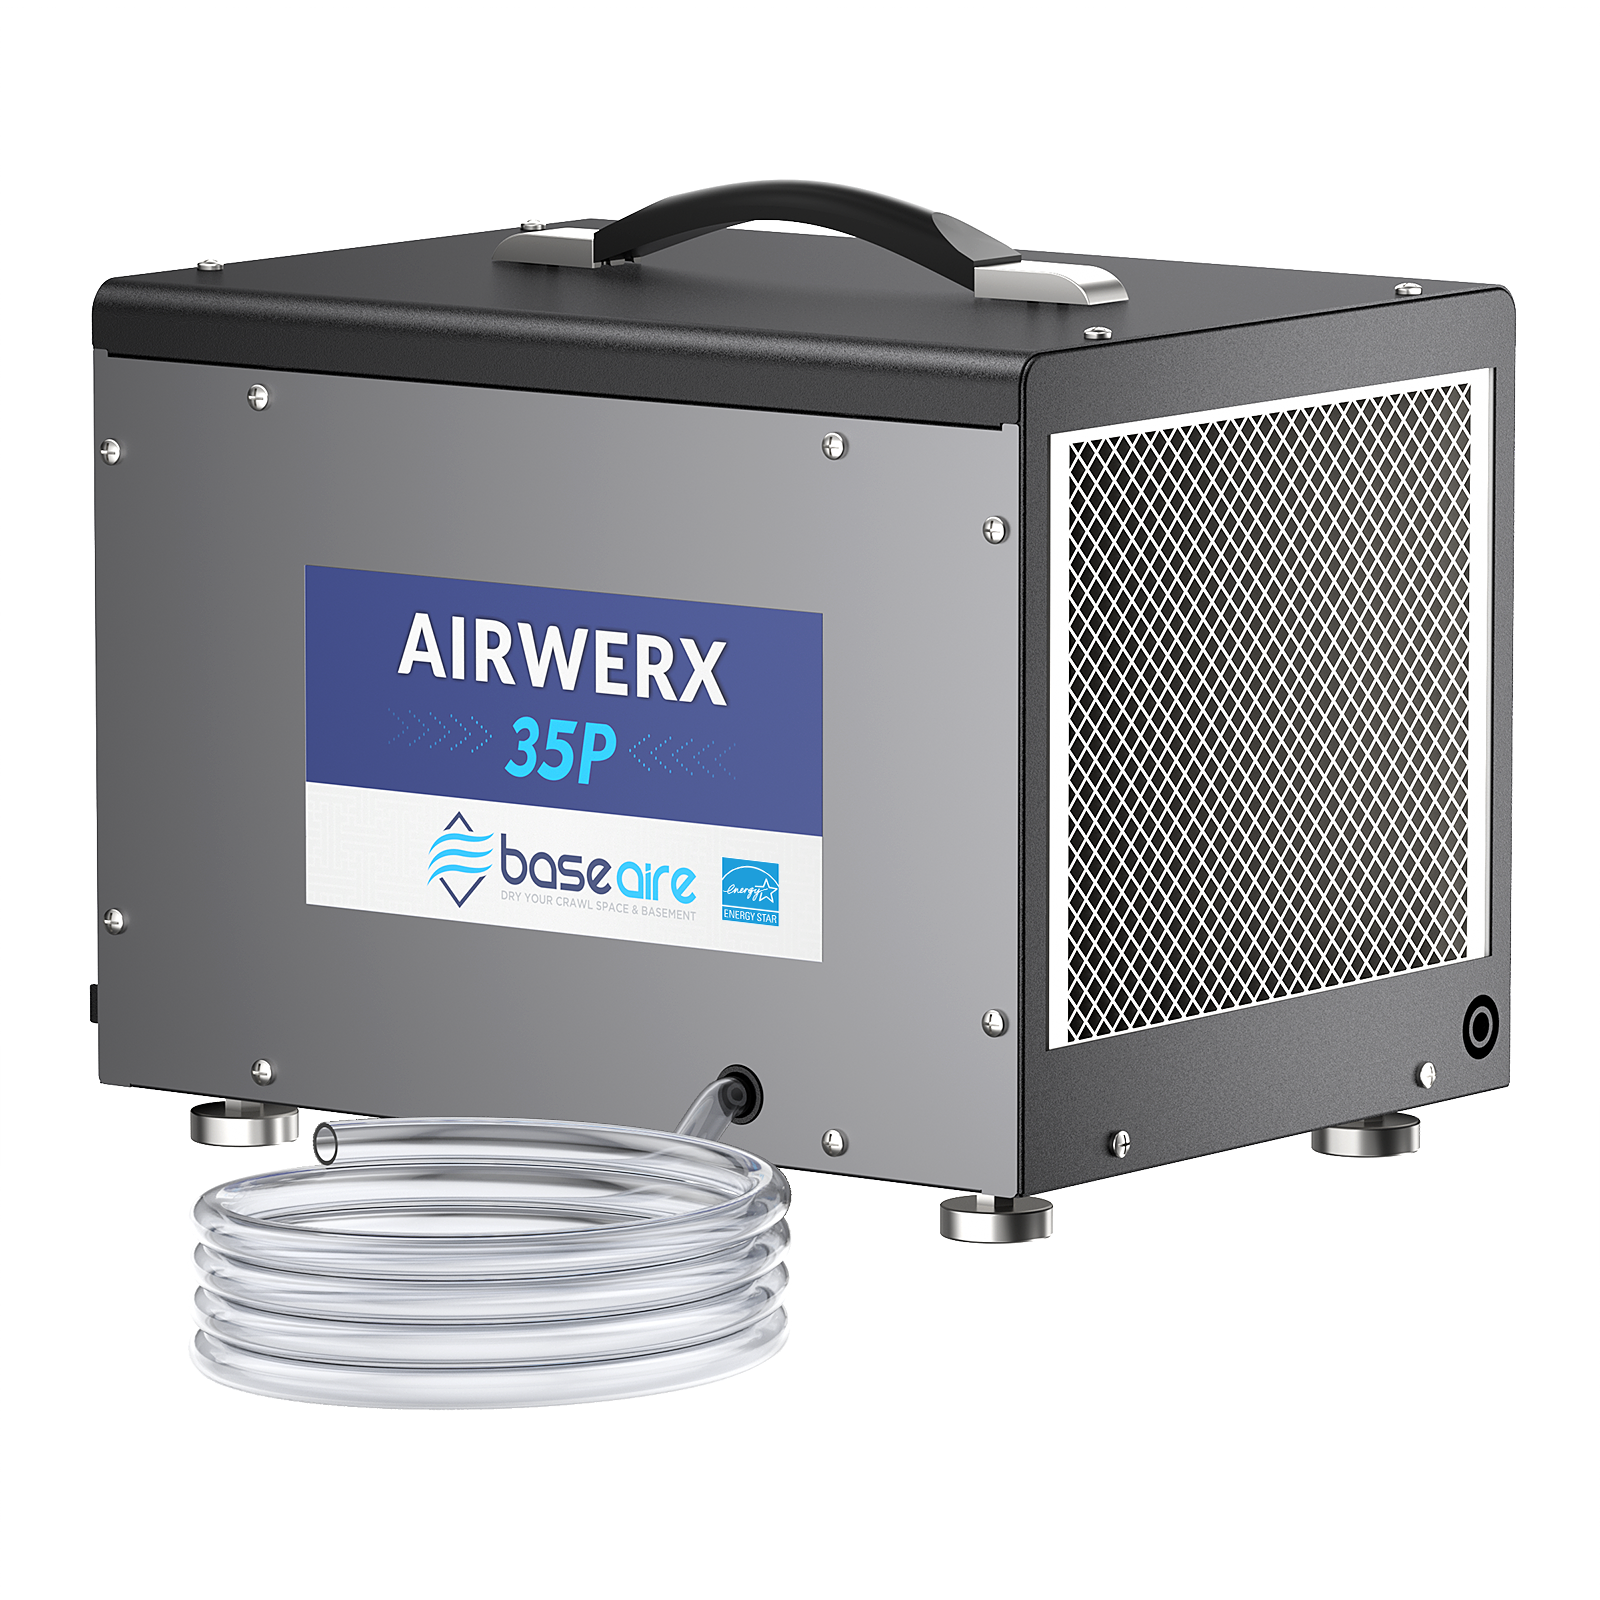 BaseAire® AirWerx 35P Dehumidifier